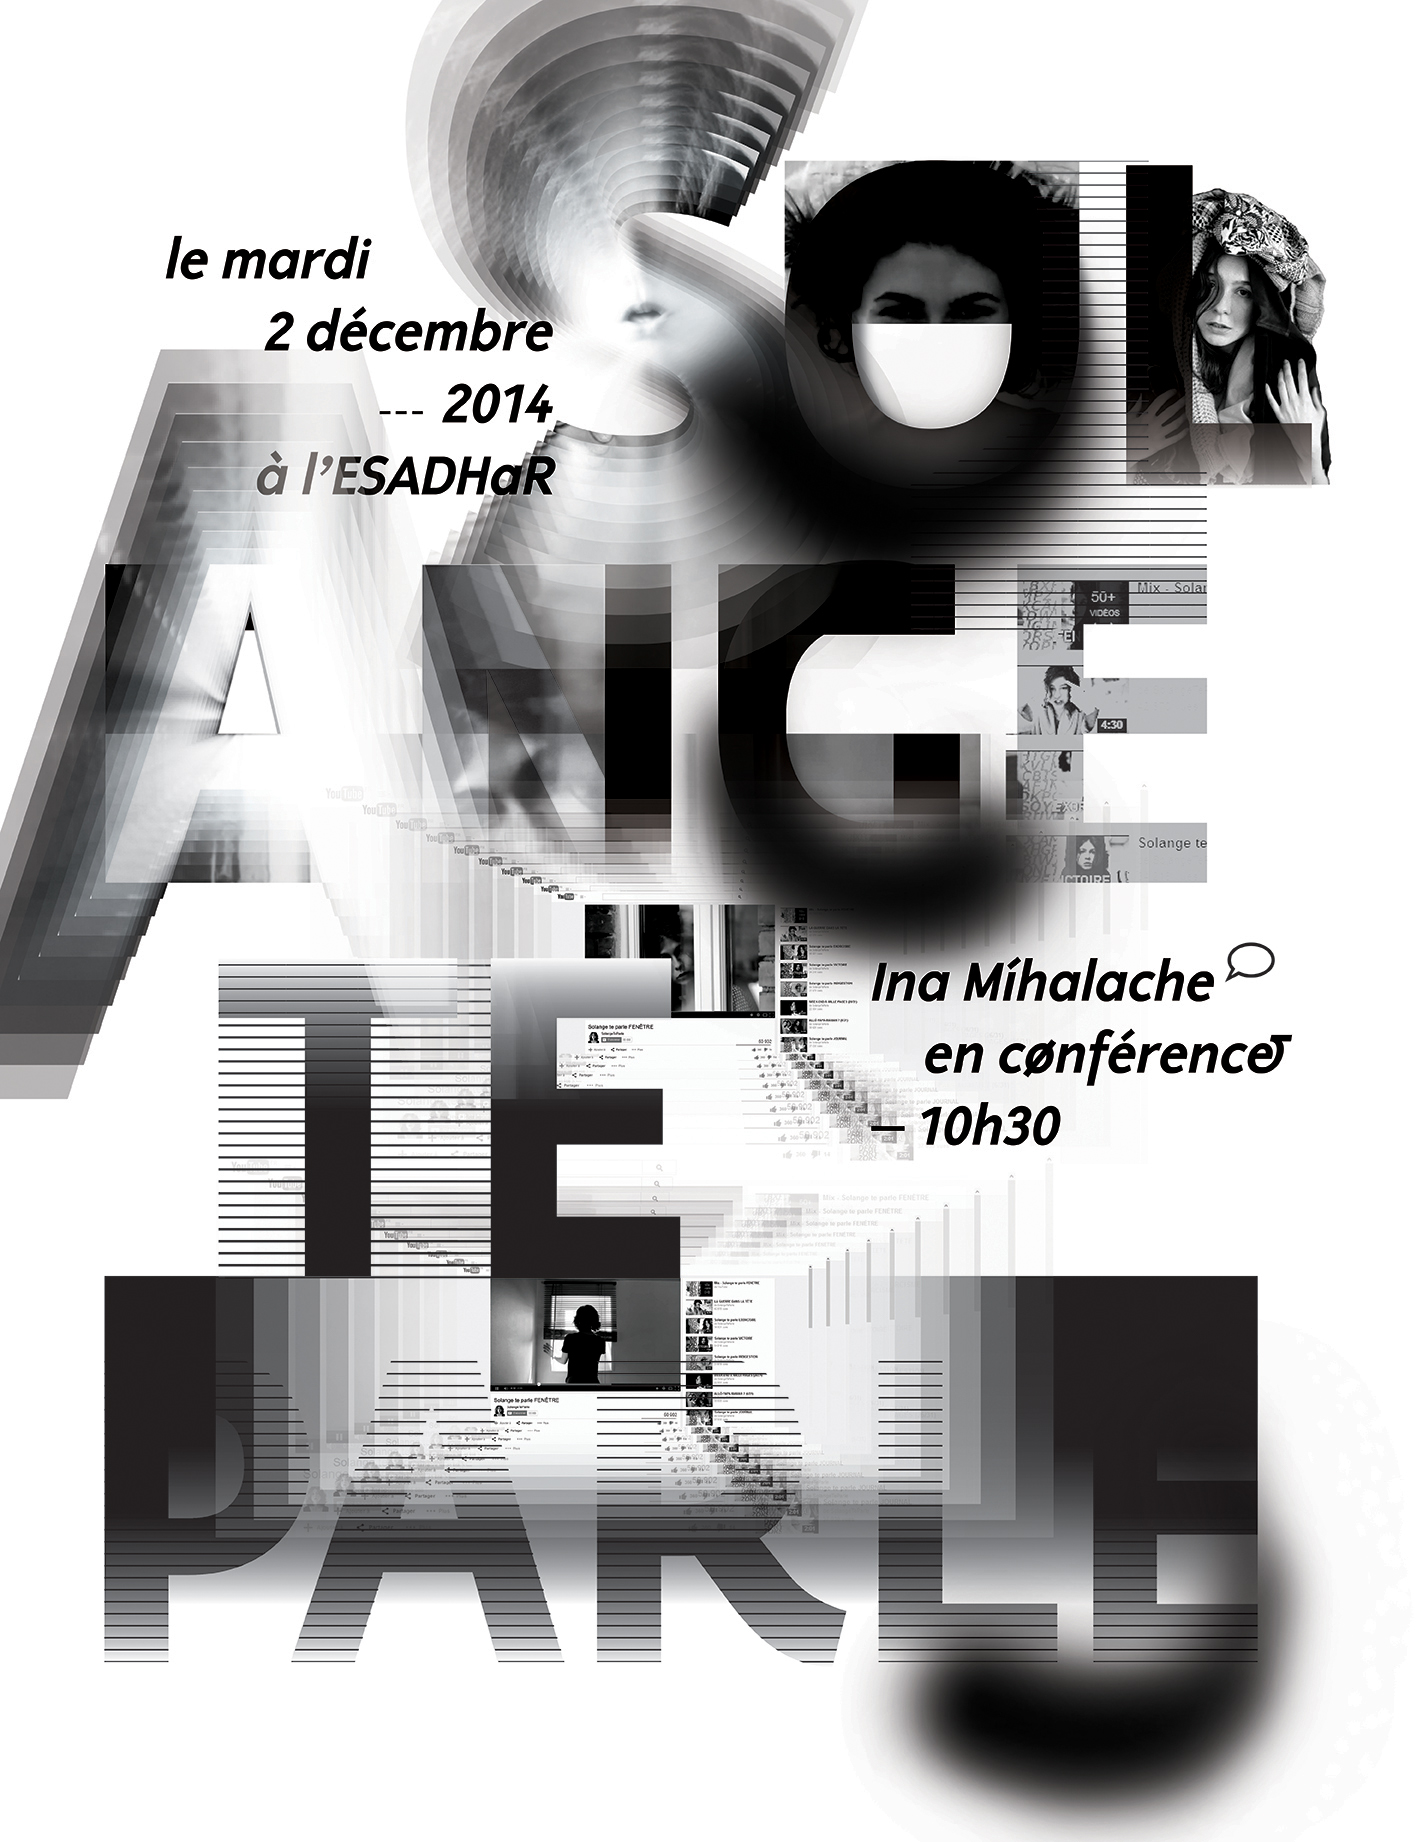 Affiche pour la conférence de Solange Te Parle